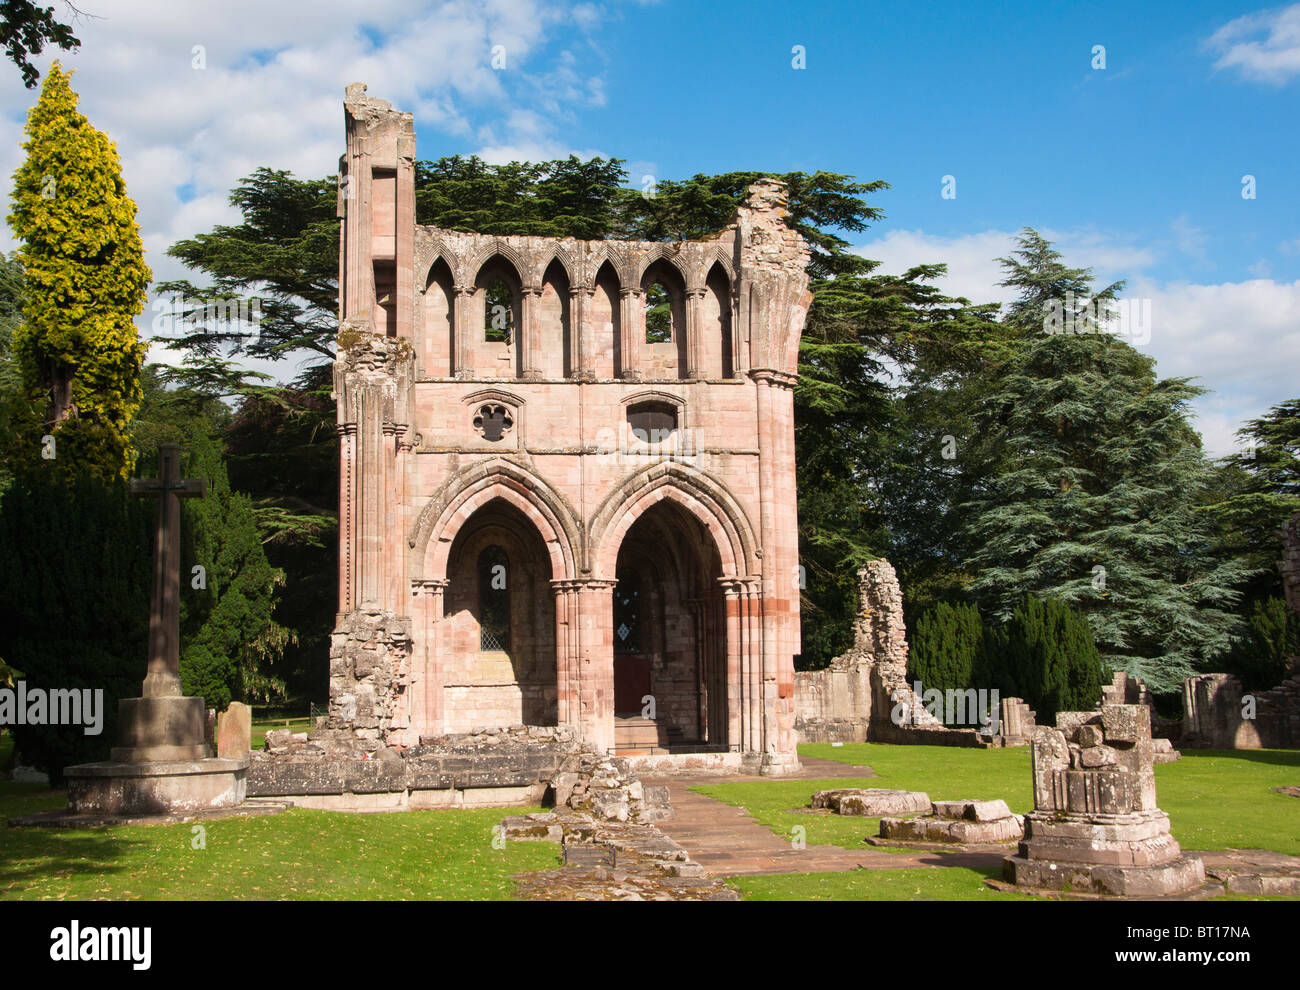 Las ruinas de la arquitectura medieval de Dryburgh Abbey en la frontera escocesa, Dryburgh, Escocia. Foto de stock